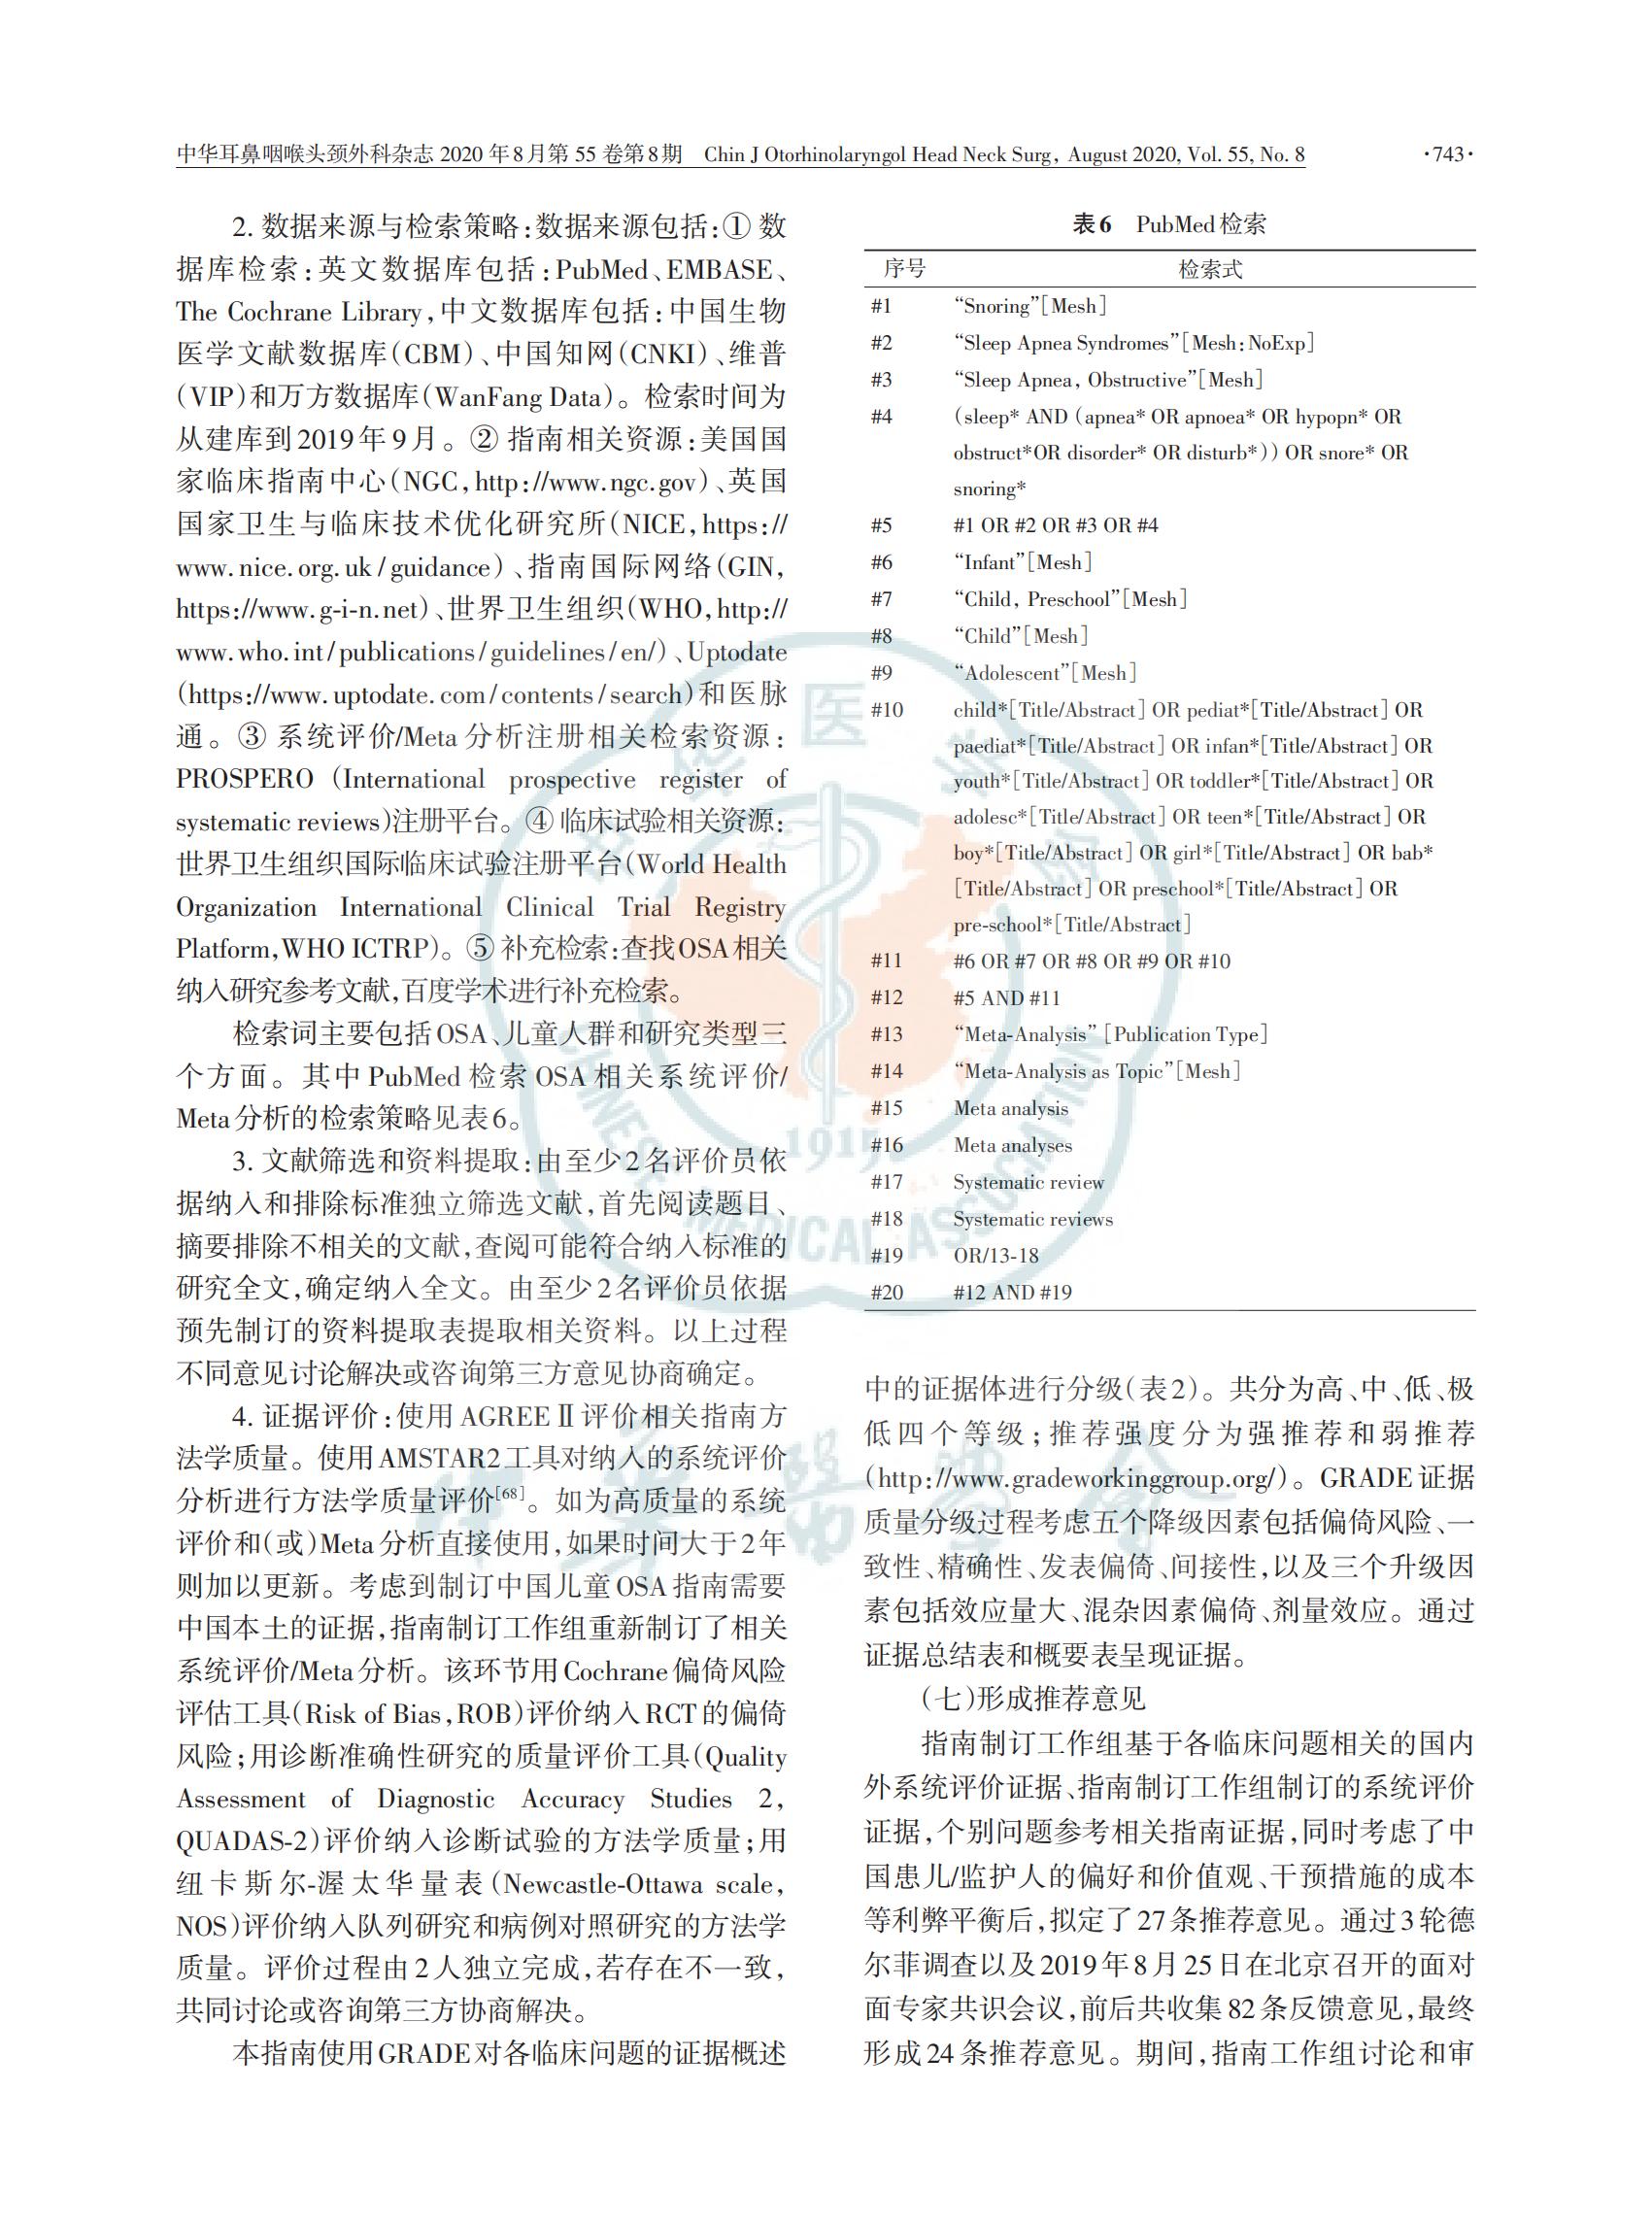 中国儿童阻塞性睡眠呼吸暂停诊断与治疗 指南（2020）(图15)